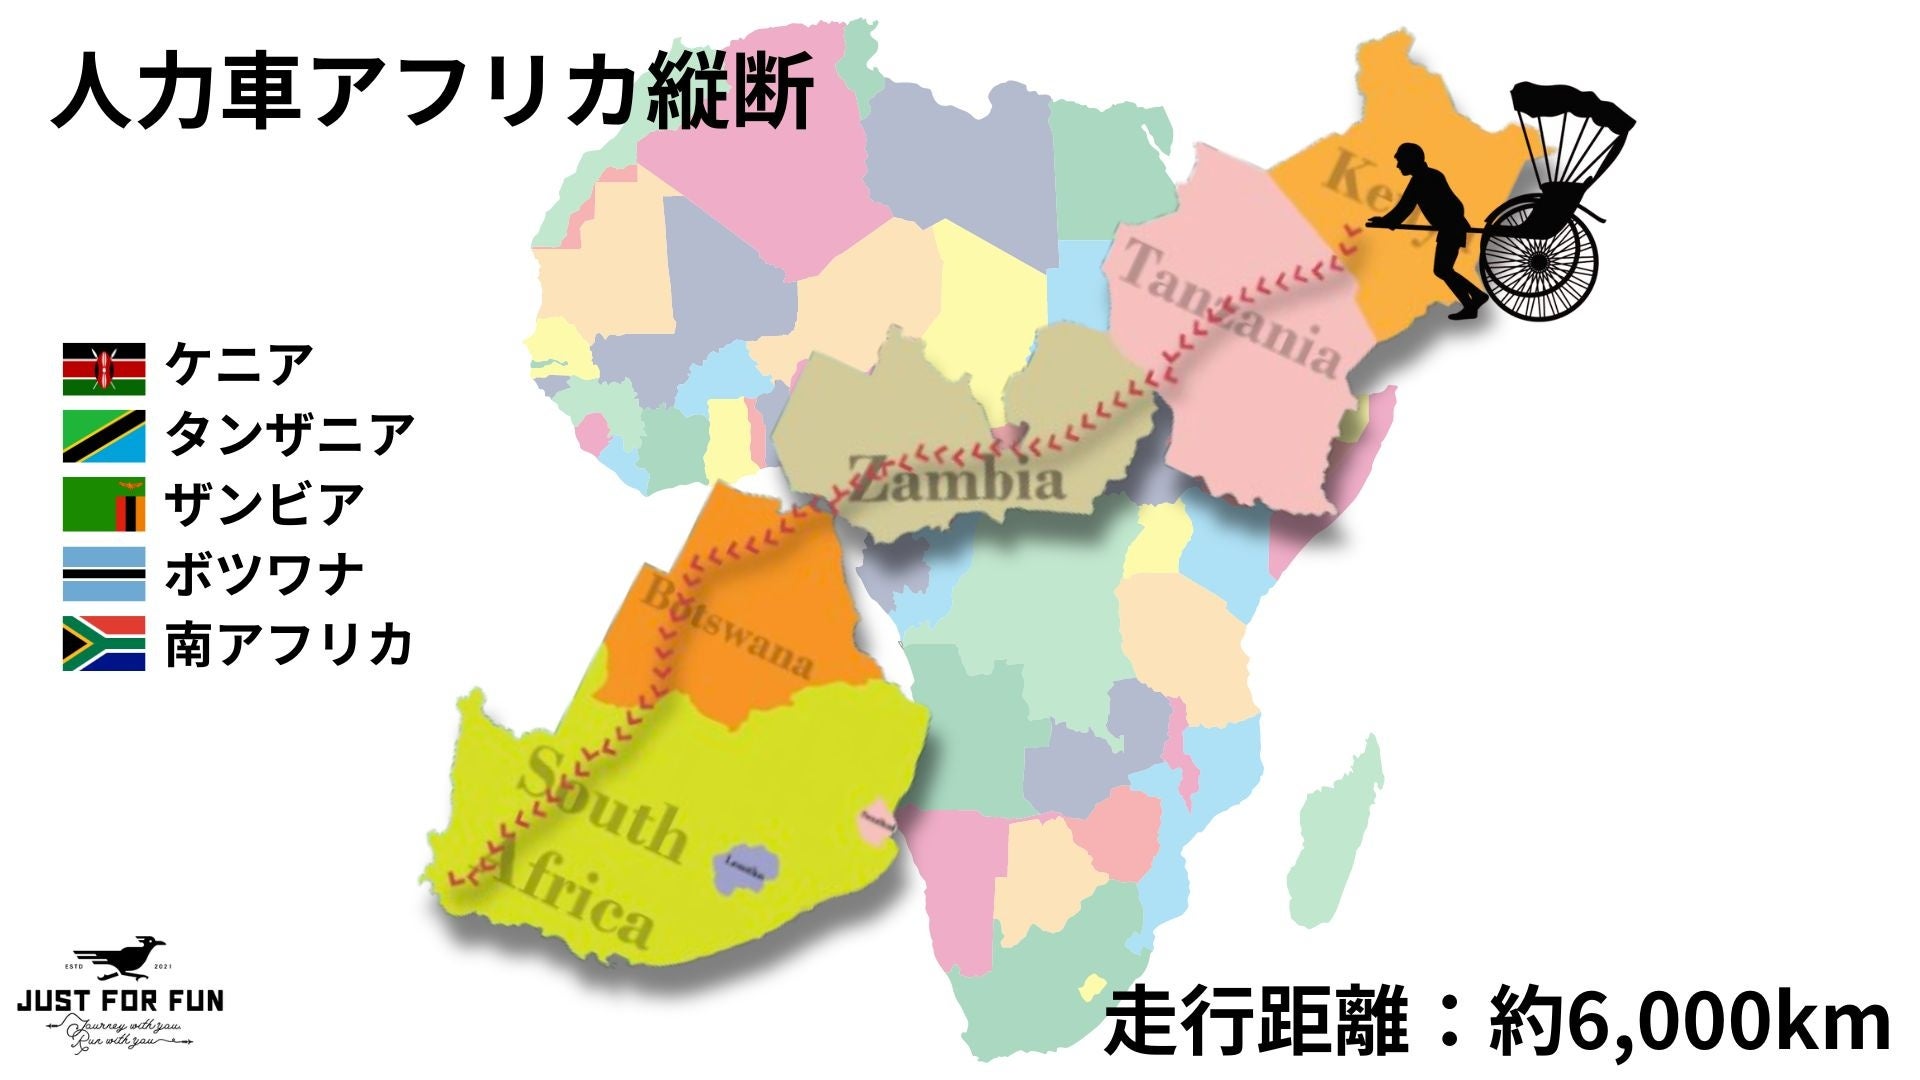 人力車で世界を走るガンプ鈴木、『アフリカ縦断の旅』6月中旬よりスタート